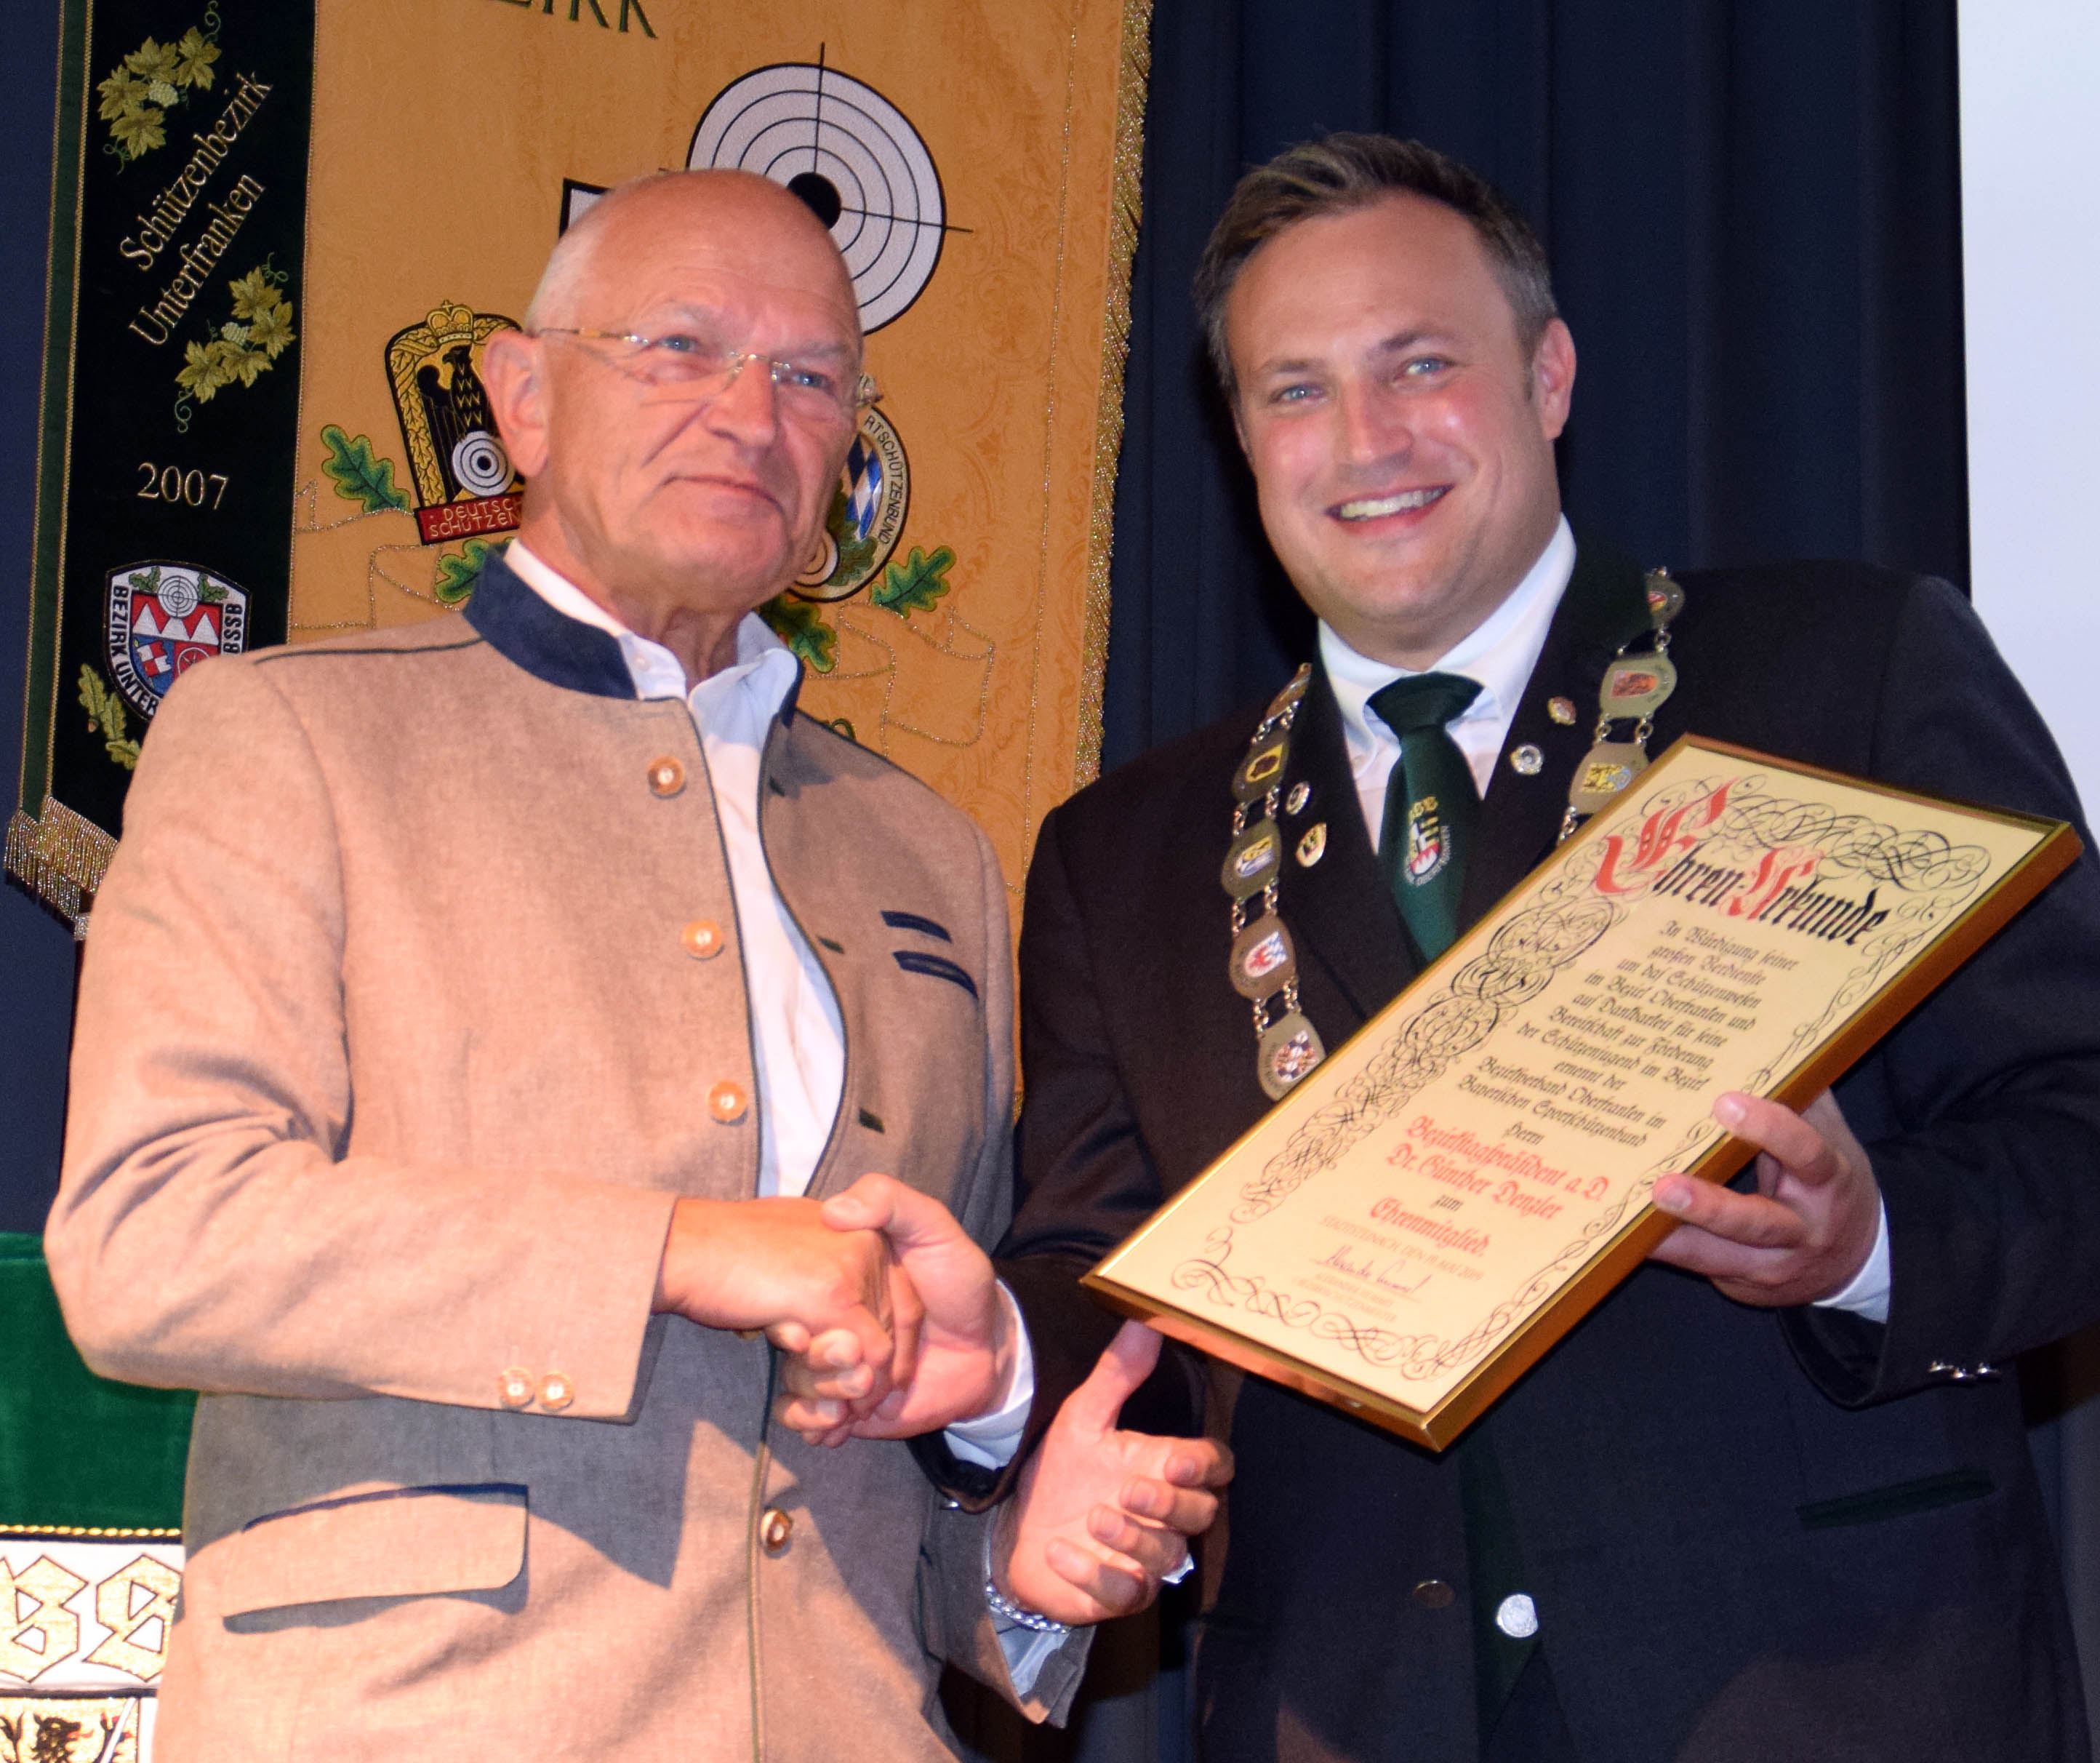 Bezirkstagspräsident a. D. Günther Denzler (links) hat sich stark für die Förderung des Schützenwesens in Oberfranken eingesetzt. Dafür wurde ihm die Ehrenmitgliedschaft des Schützenbezirks verliehen. Die Urkunde händigte 1. BezSM Hummel aus.